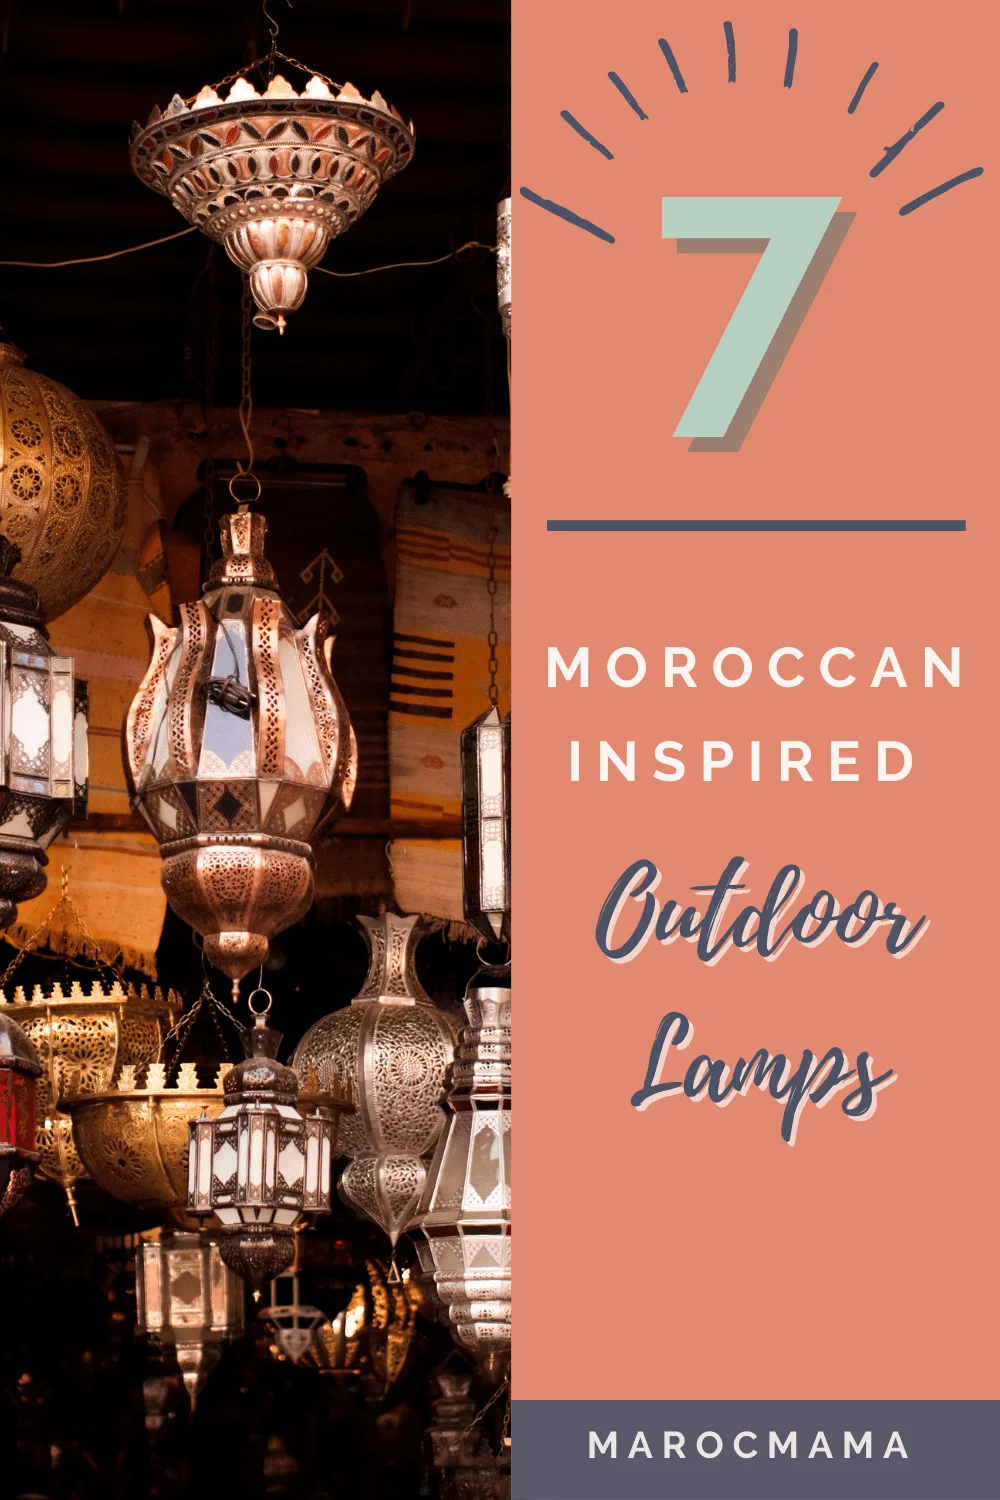 https://marocmama.com/wp-content/uploads/2020/12/Moroccan-Outdoor-Lamps.png.webp